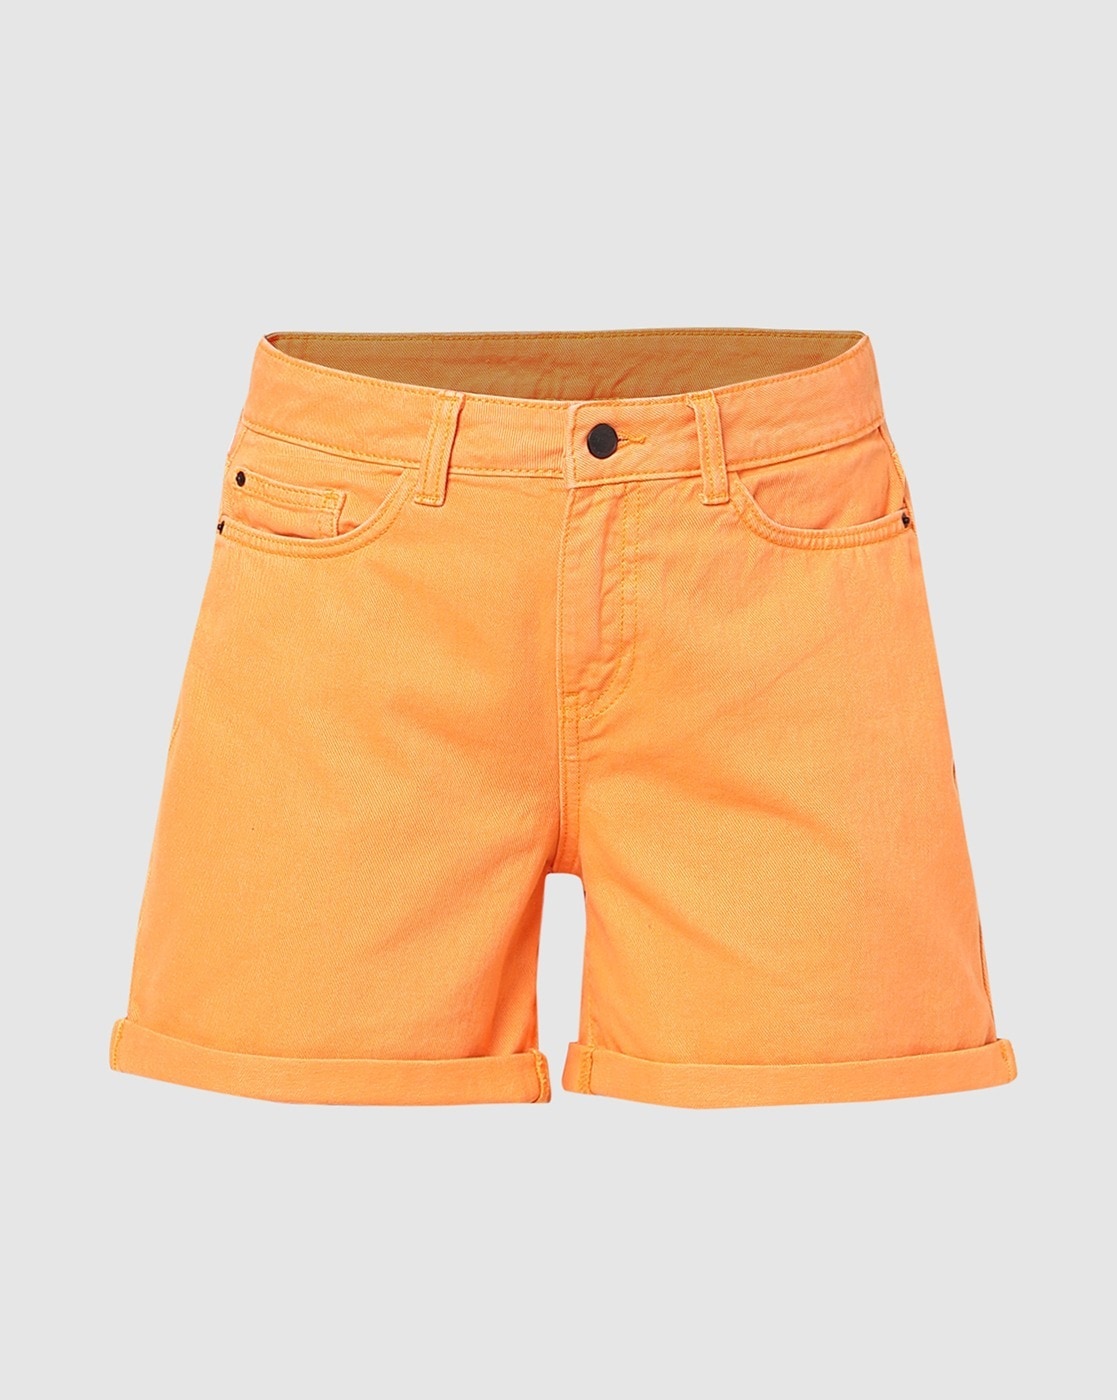 Buy Girls Orange Raw Hem Denim Shorts Online at Sassafras